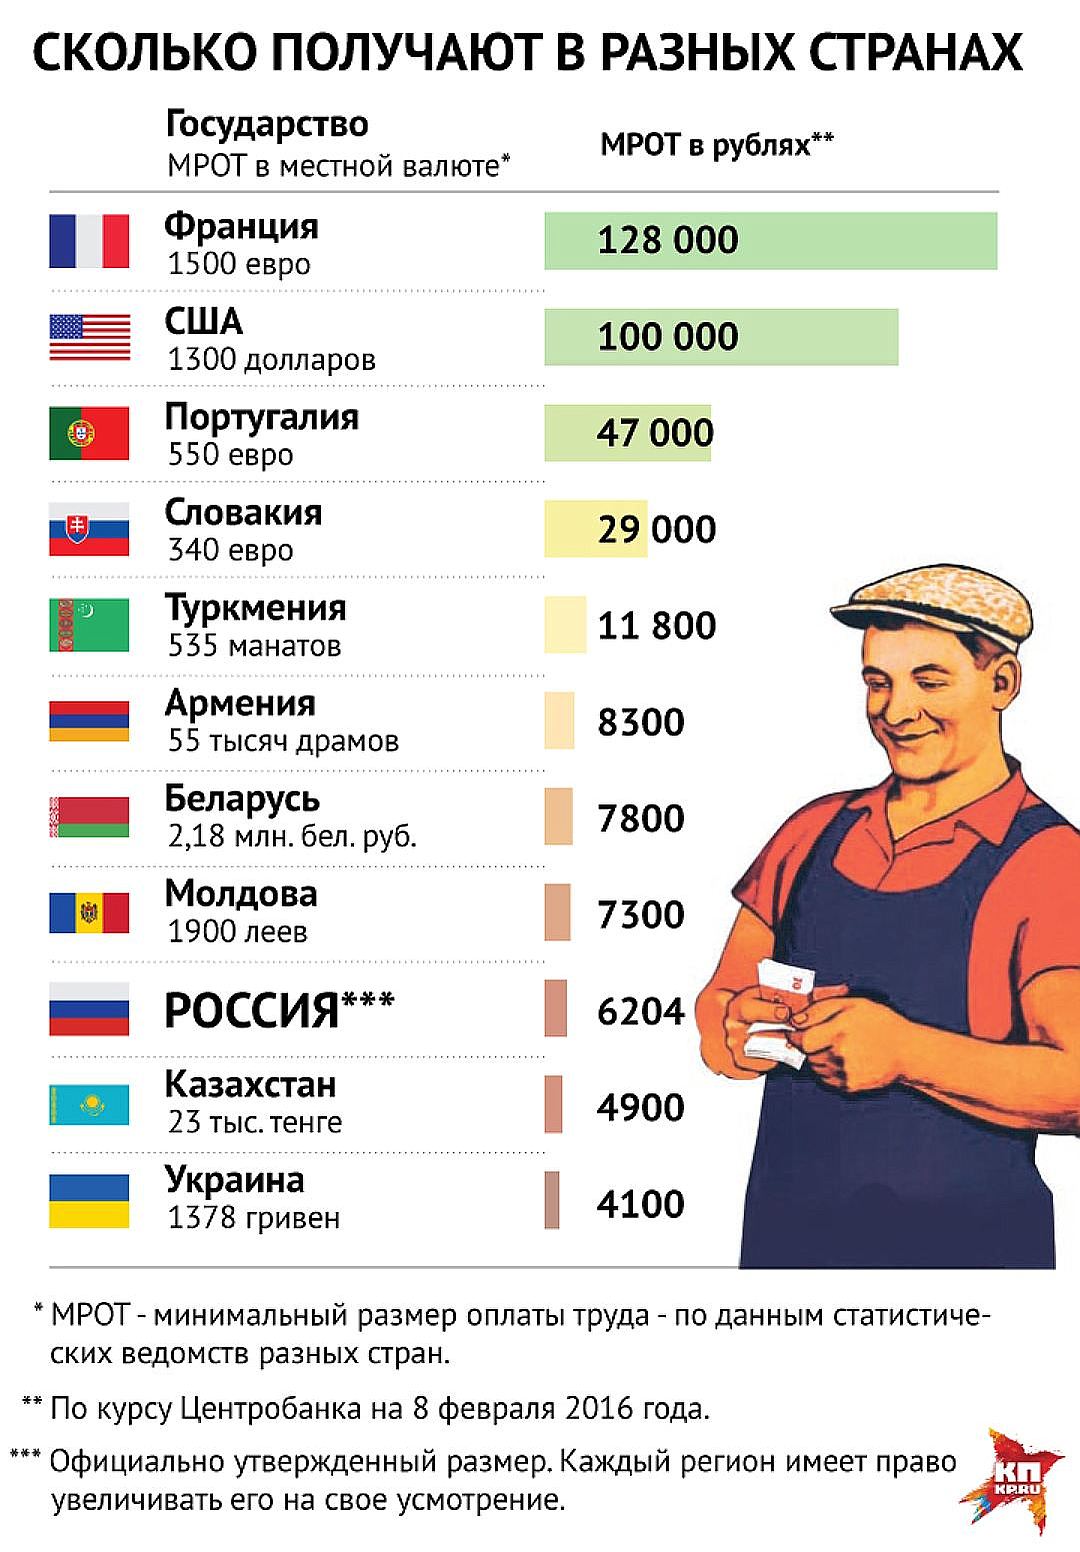 Заработная плата меньше минимальной. Зарплата. Минимальная заплата в Росси. Зарплаты в разных странах. Заработные платы в России.